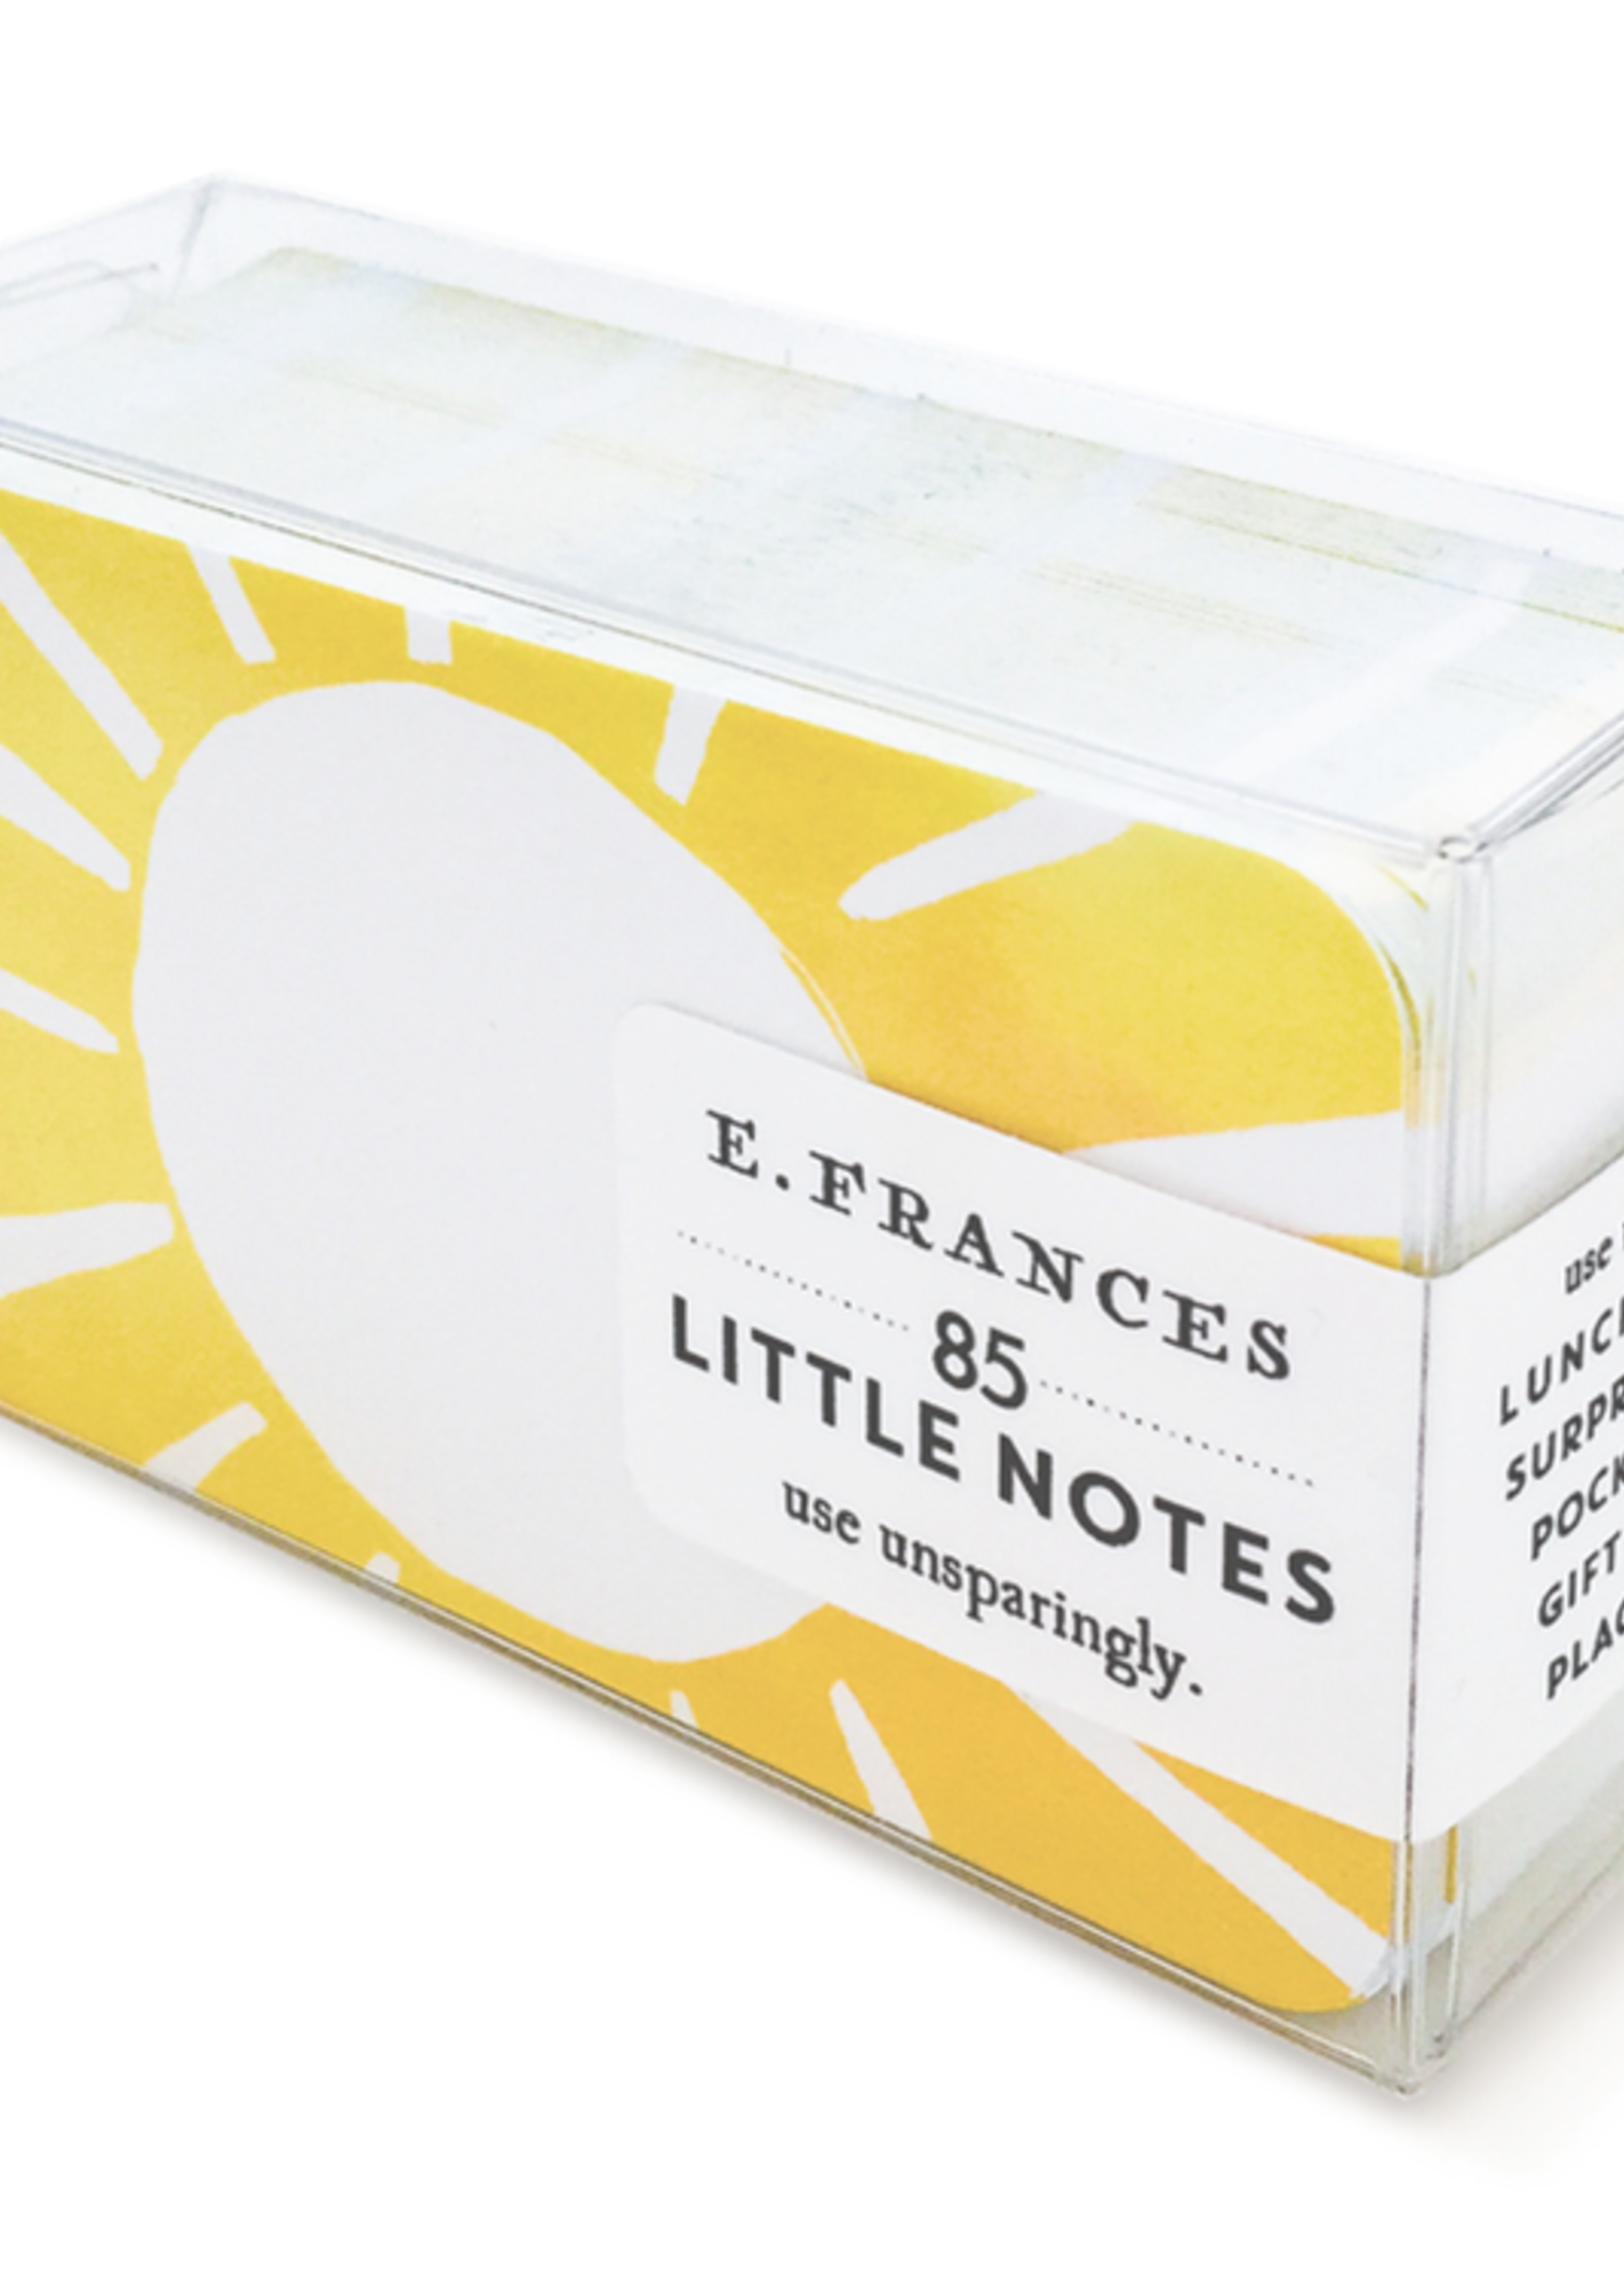 E. Frances E. Frances Little Notes